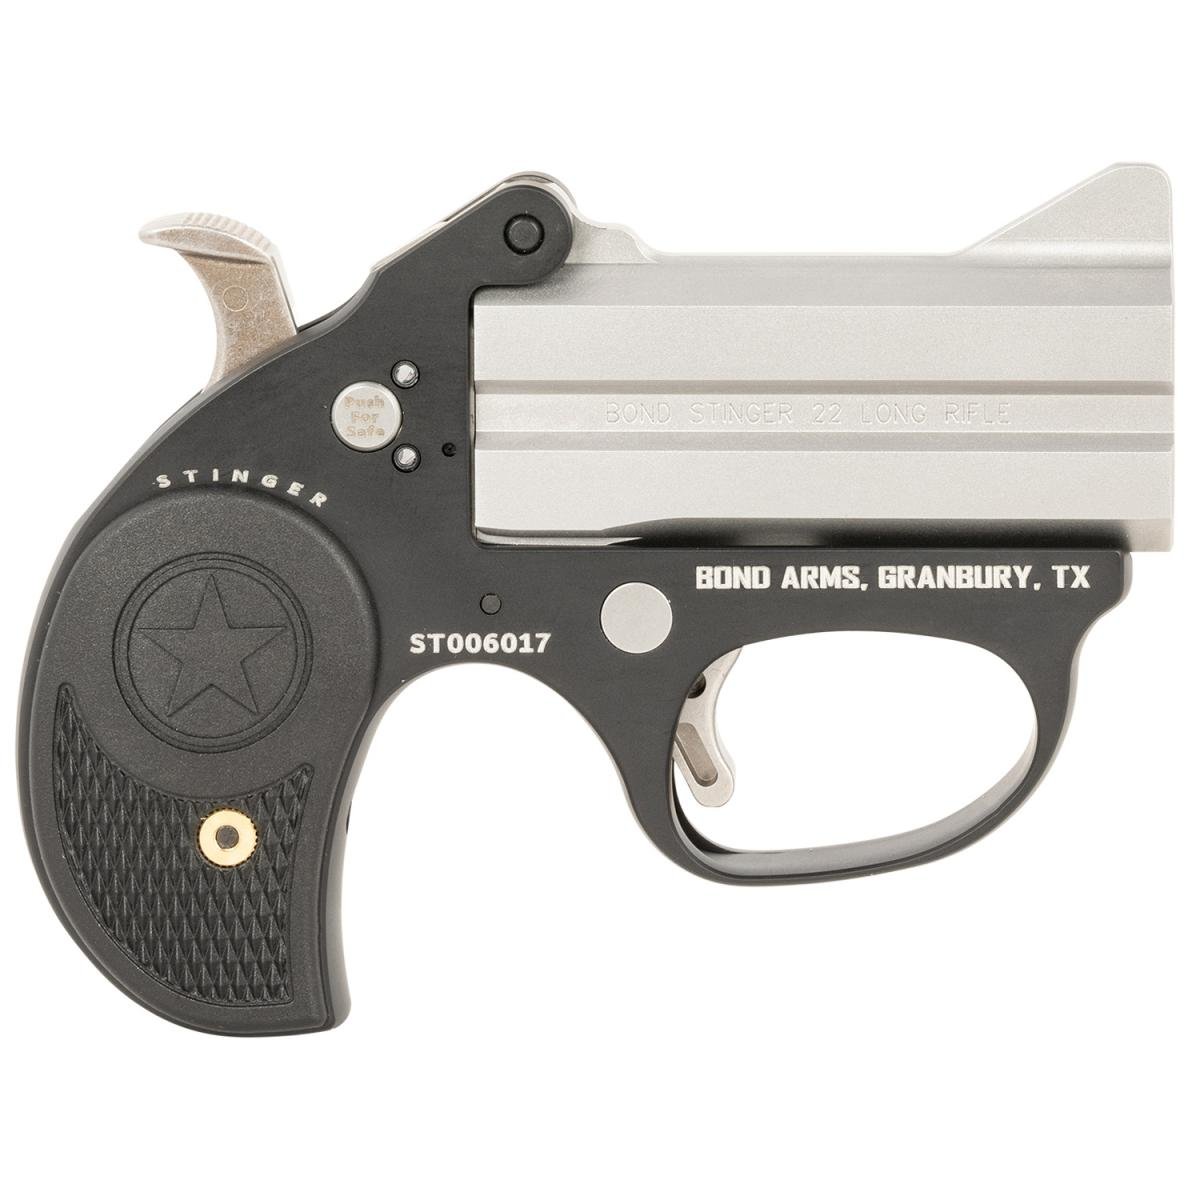 Bond Arms Stinger Derringer 3" BBL 2 Rd. Silver/ Black 22 LR